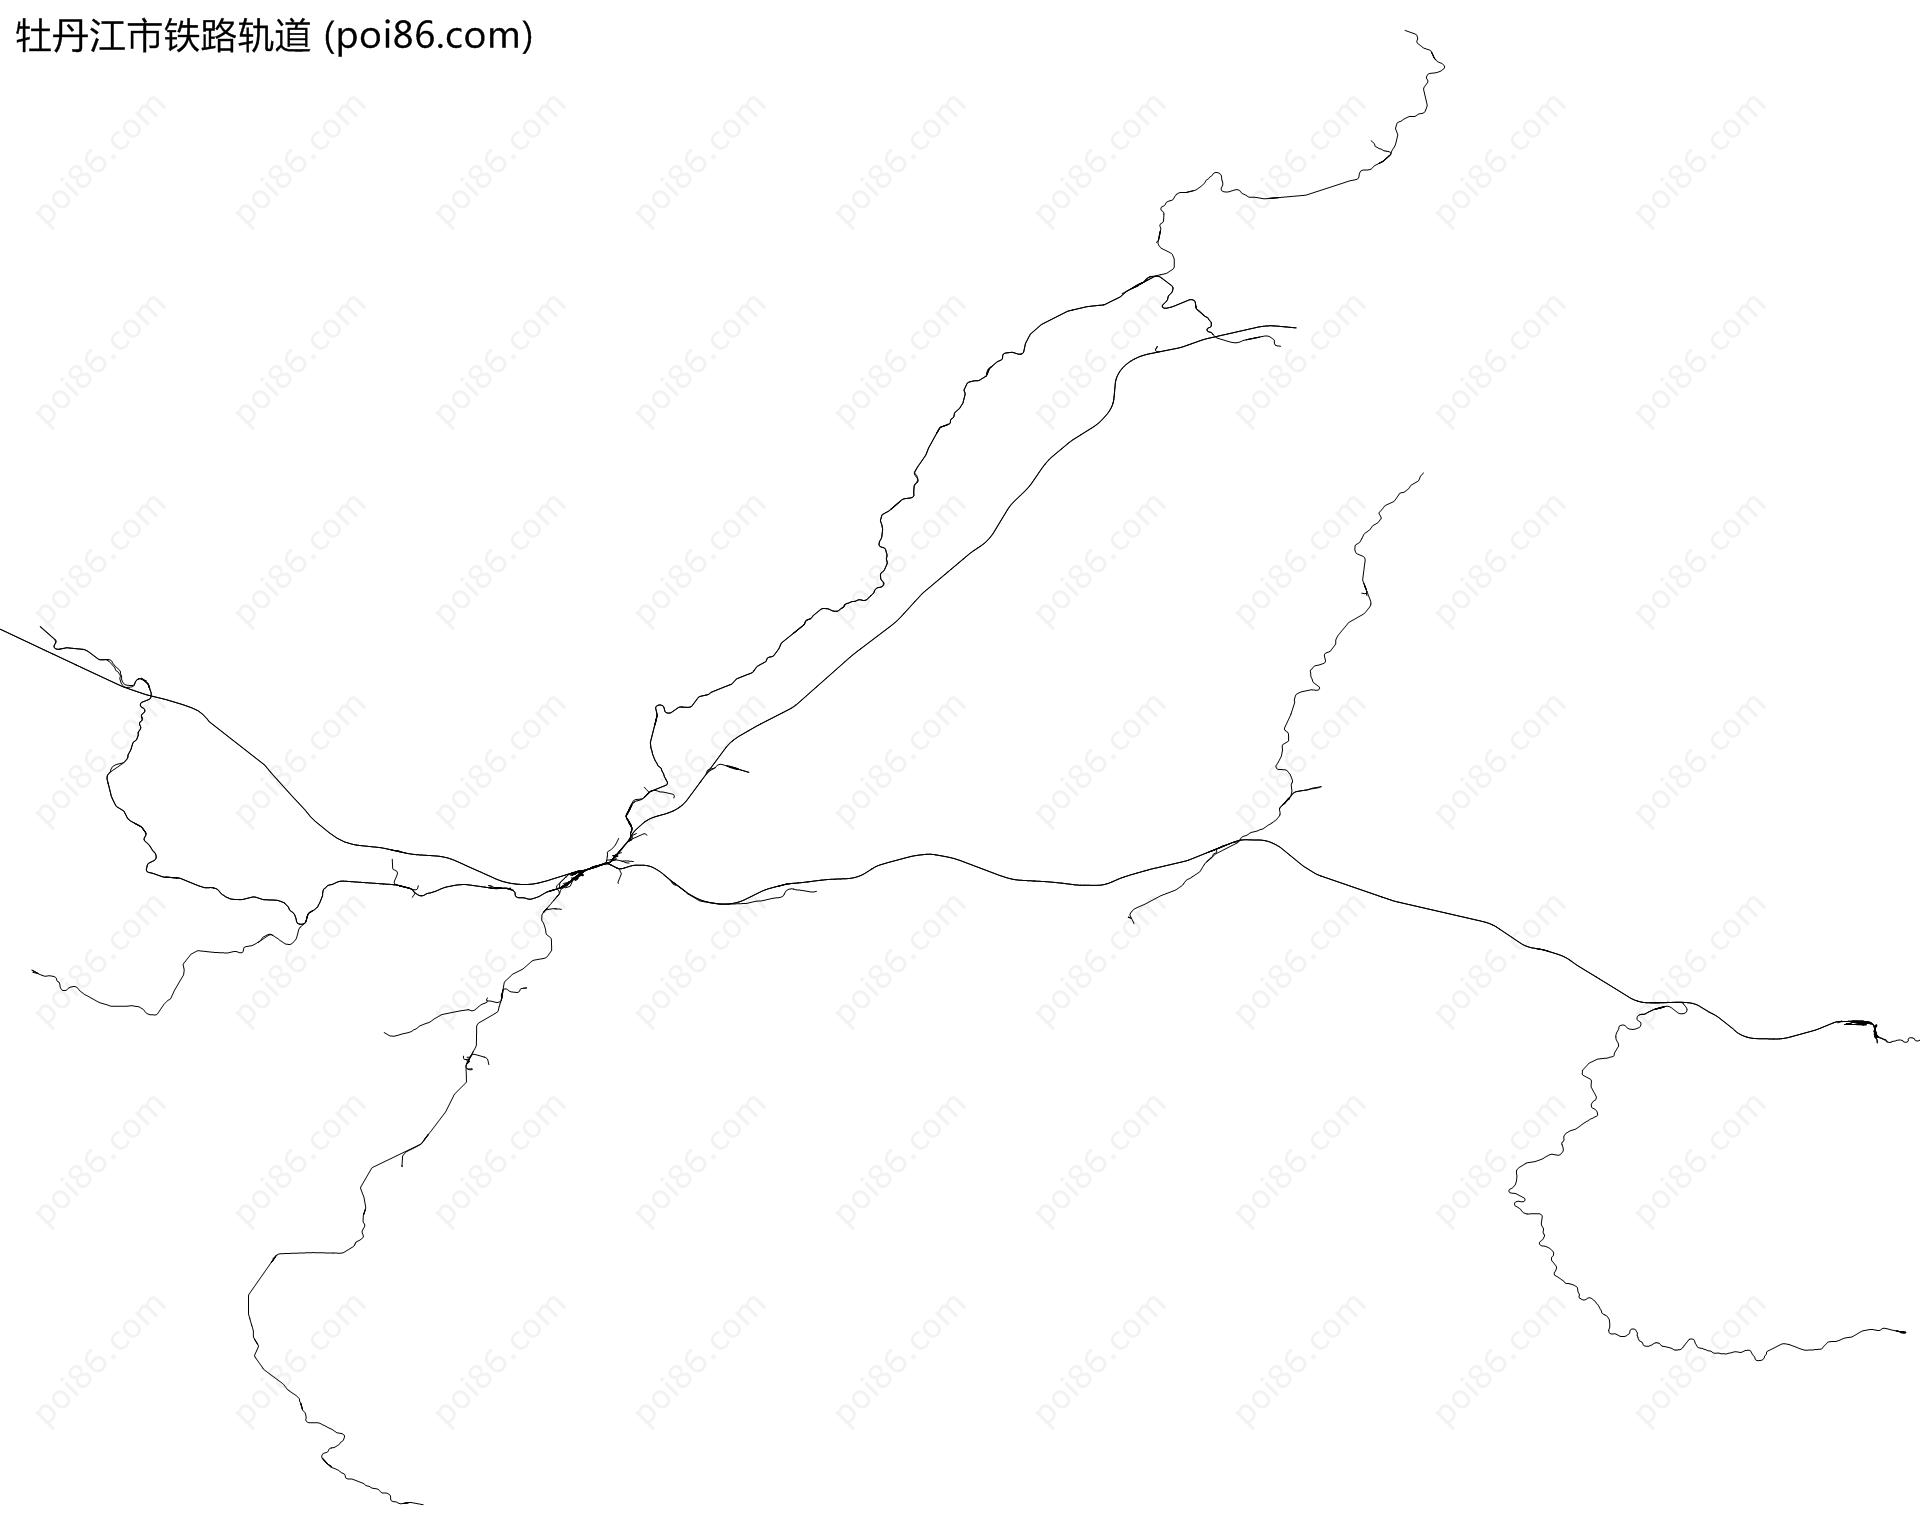 牡丹江市铁路轨道地图